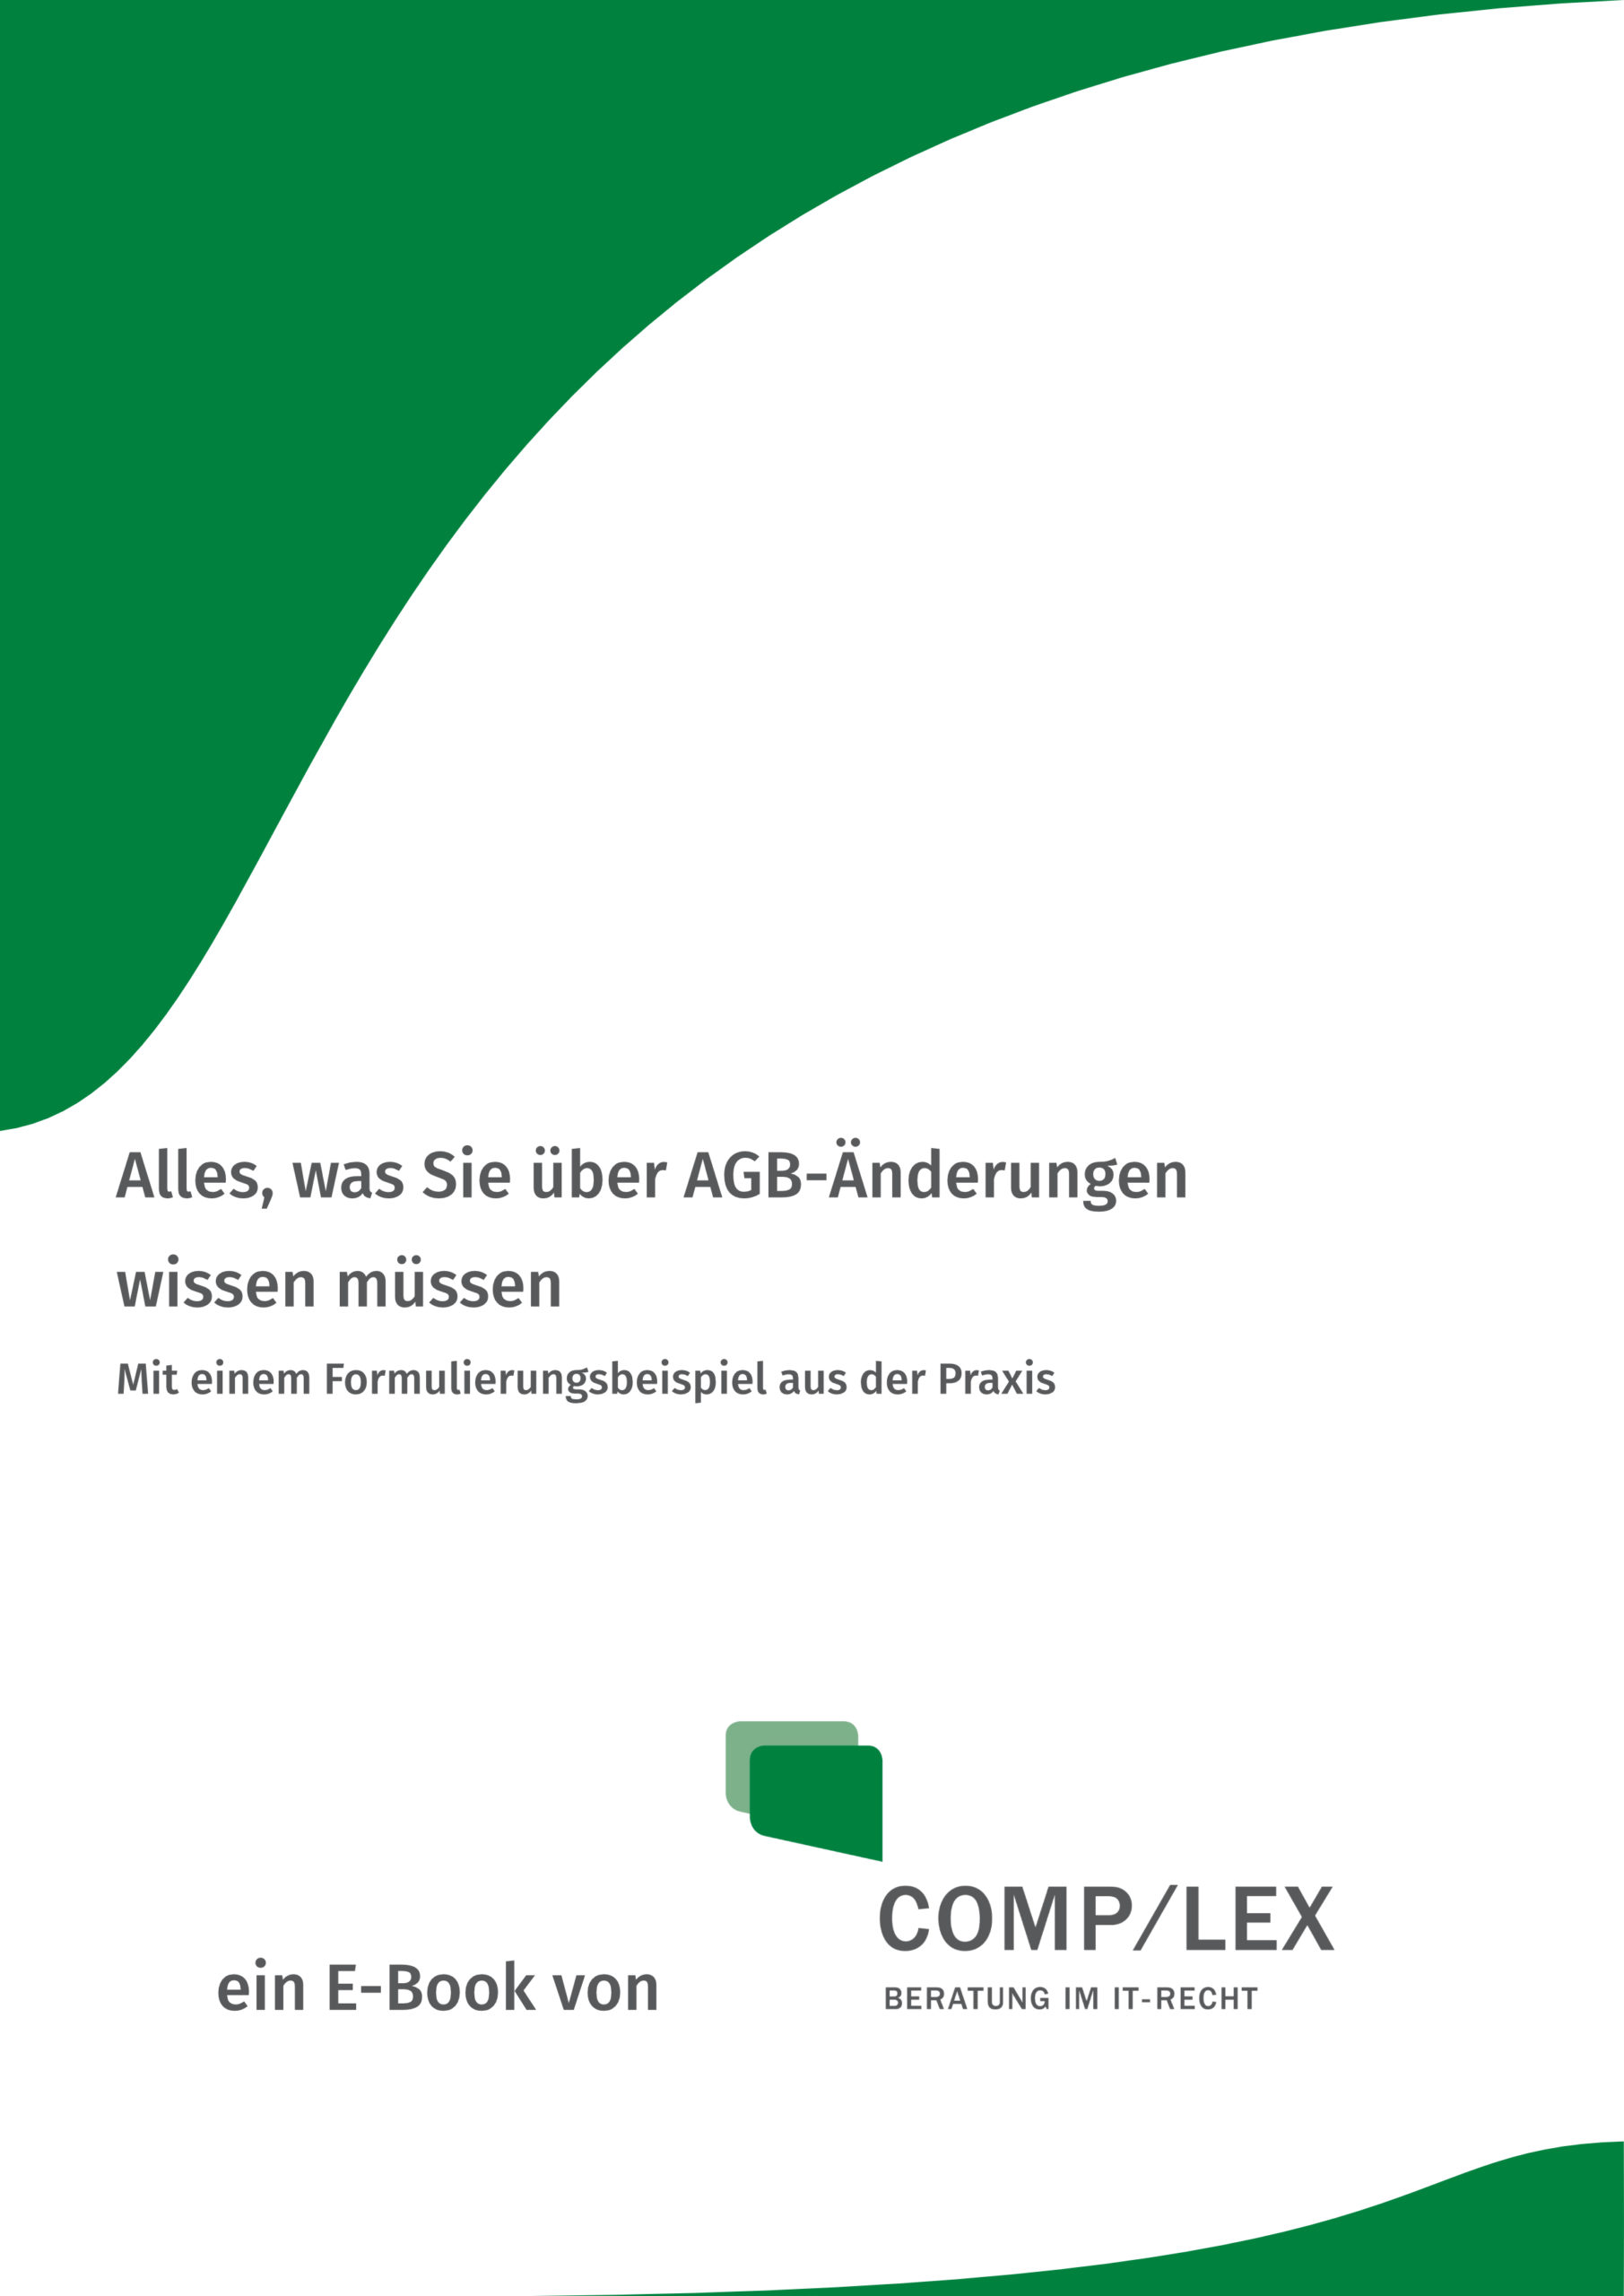 E-Book: Alles über AGB-Änderungen